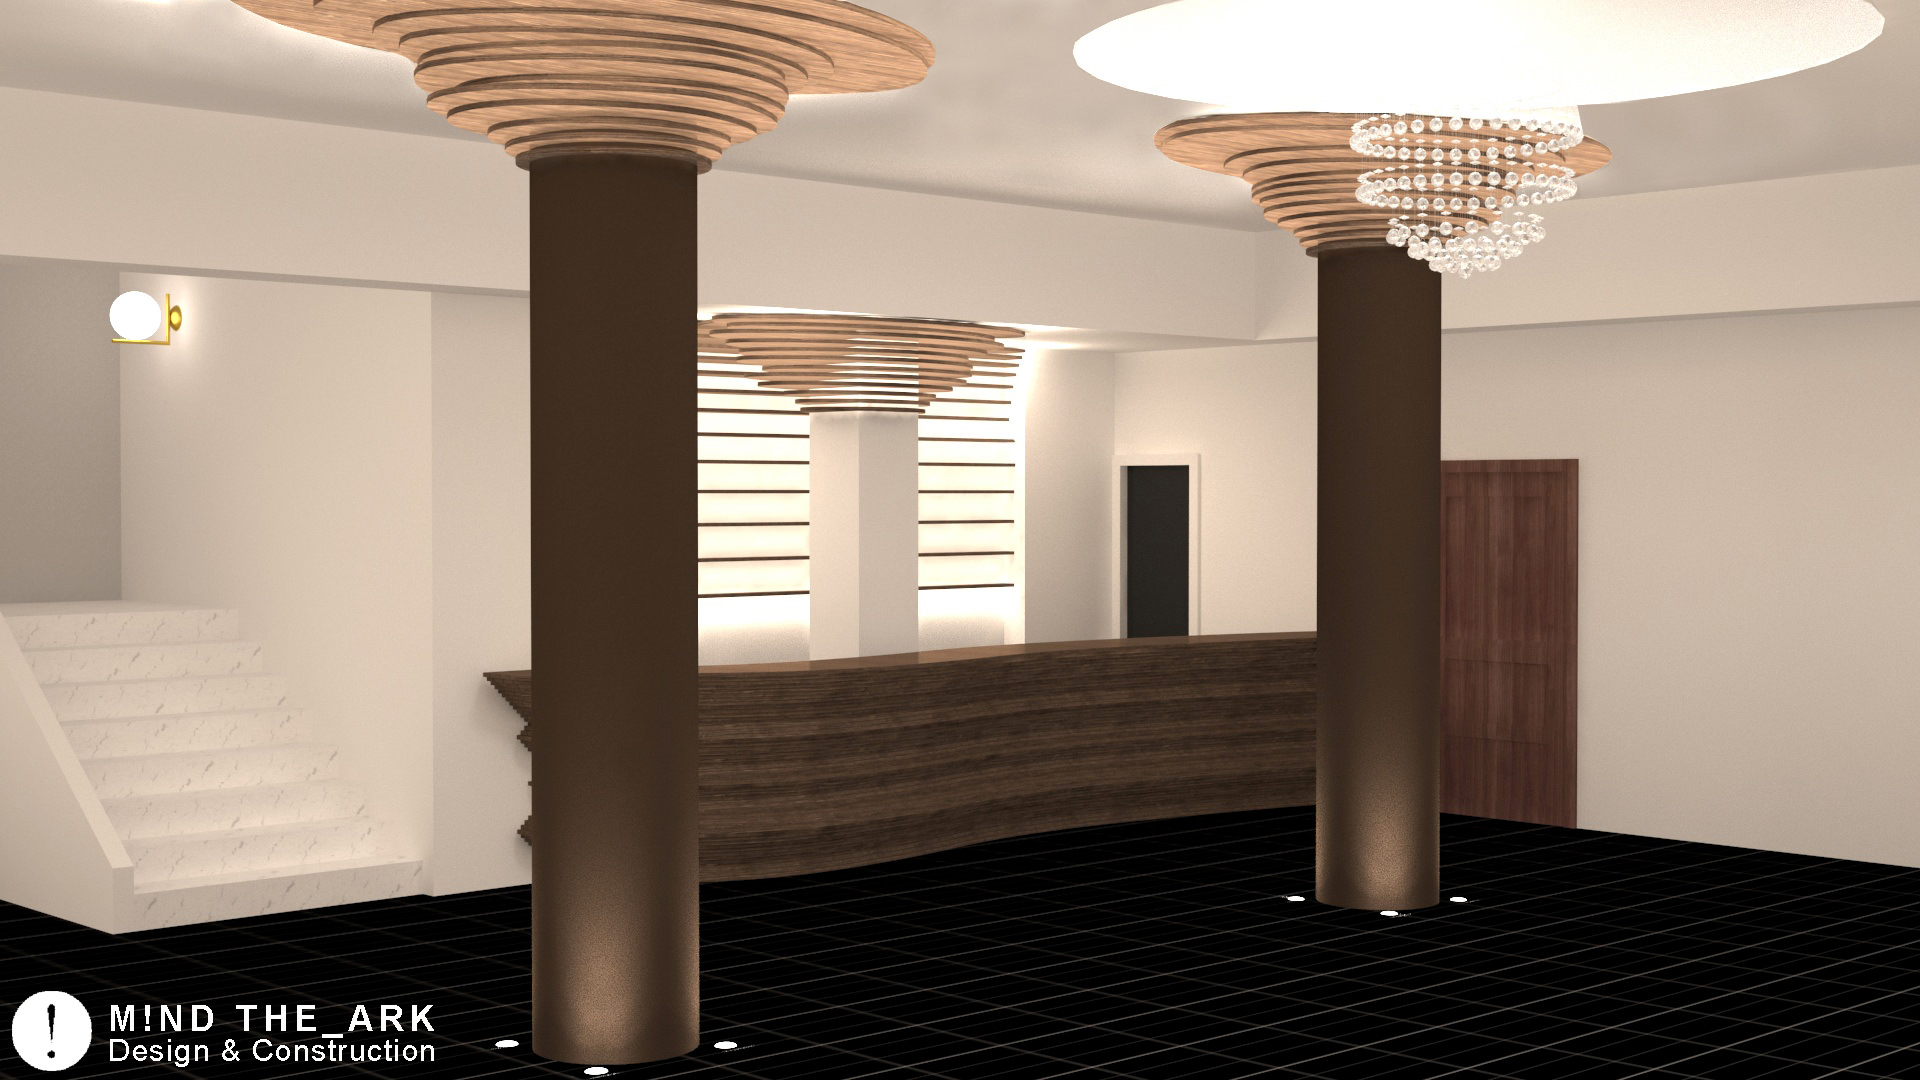 Σχεδιαστική πρόταση για τη reception στο ξενοδοχείο Congo Palace, Γλυφάδα | Ξενοδοχεία & Τουριστικές Κατοικίες